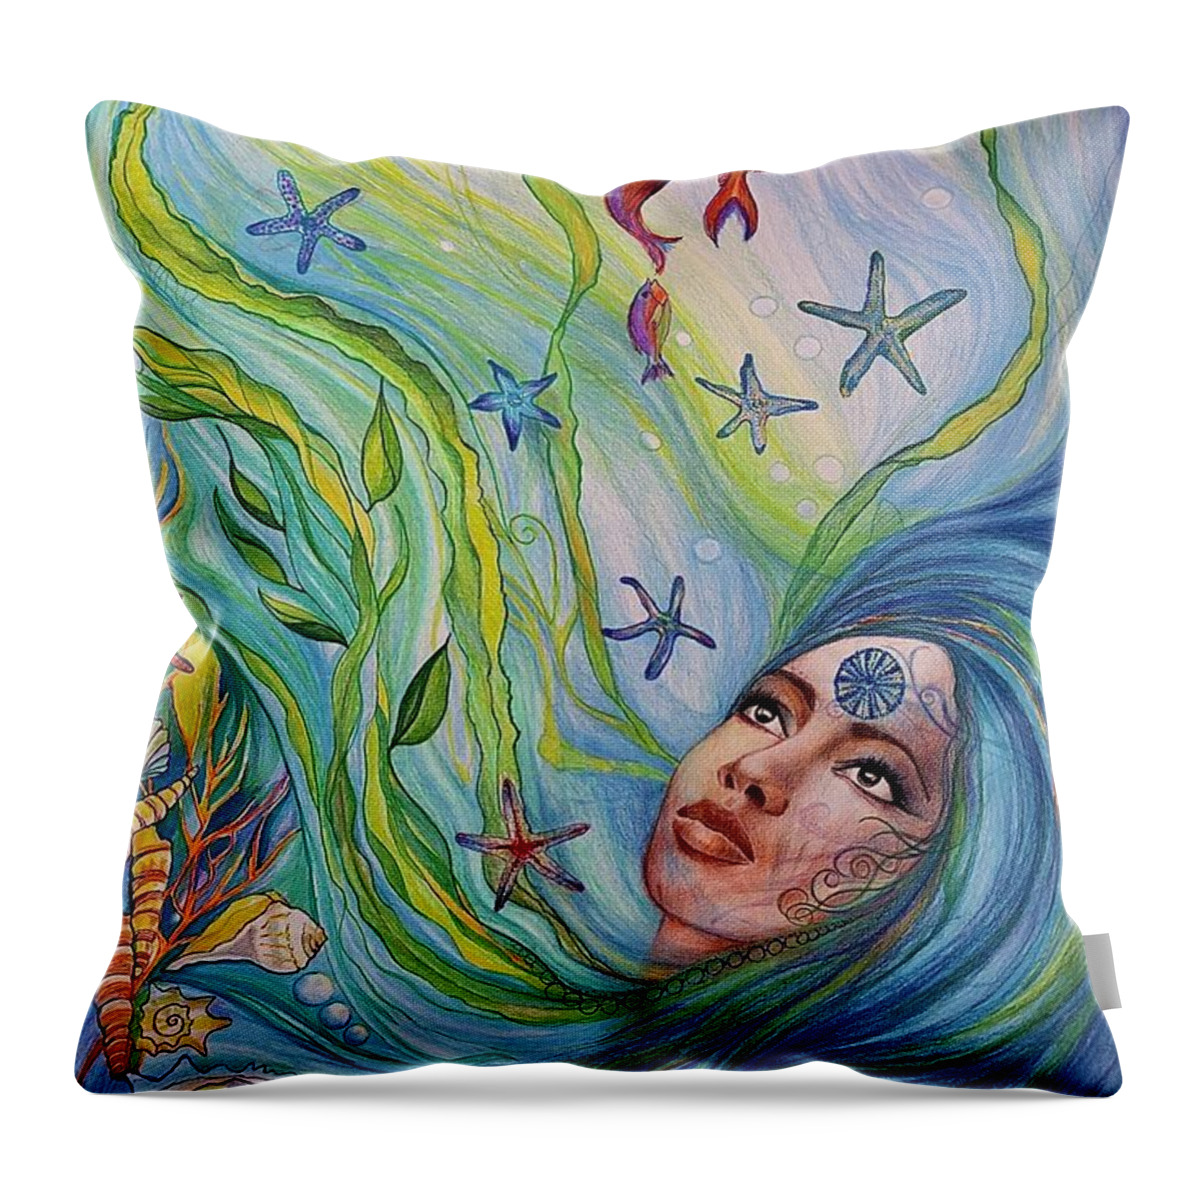 Ocean Warer Fairy Throw Pillow featuring the drawing Water serpent by Bernadett Bagyinka